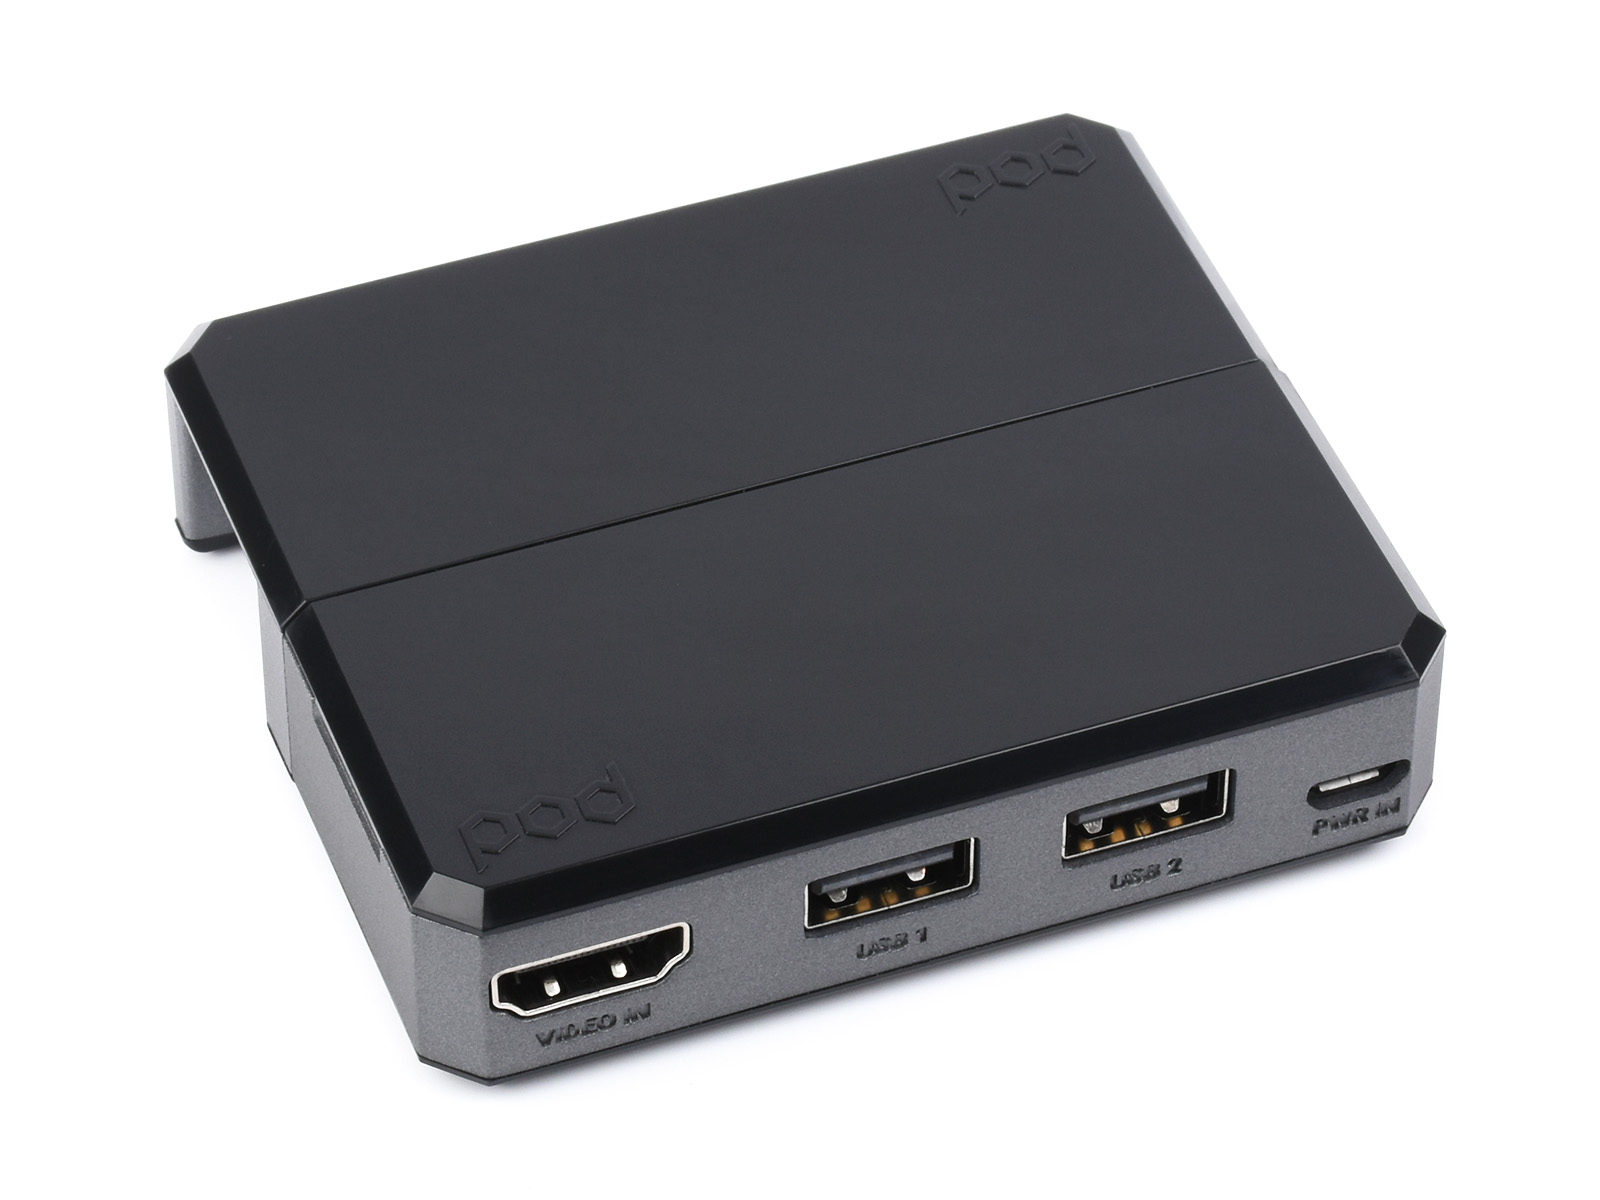 树莓派Zero USB HUB和HDMI扩展模块套件 含Zero POD外壳 适用于树莓派Zero/Zero 2 W系列主板